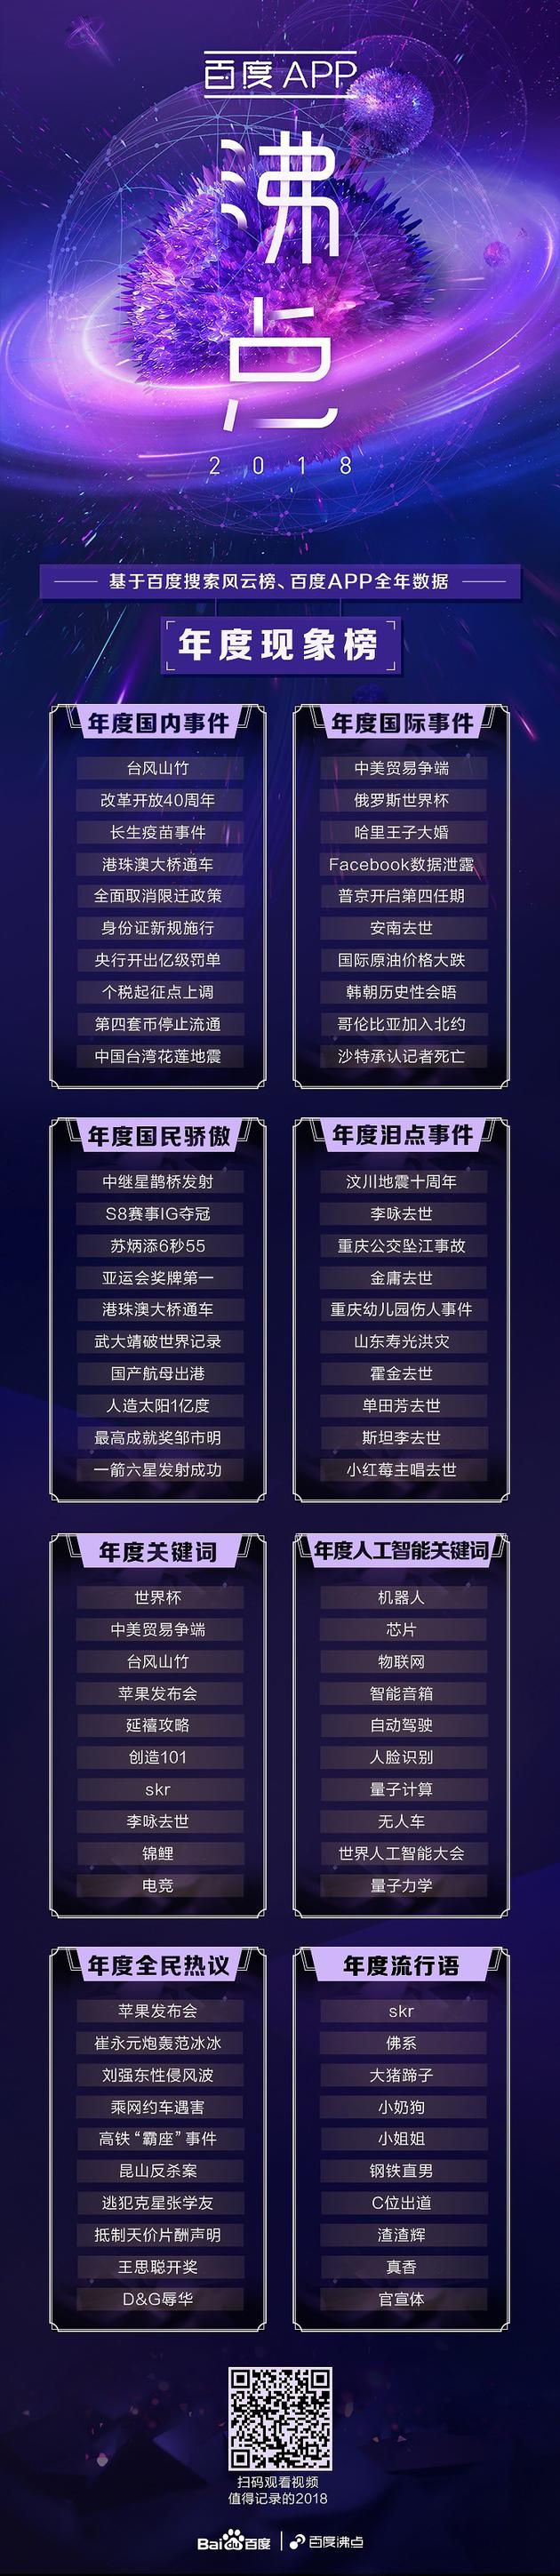 百度发布2018沸点搜索榜单：金庸、刘强东、skr等上榜